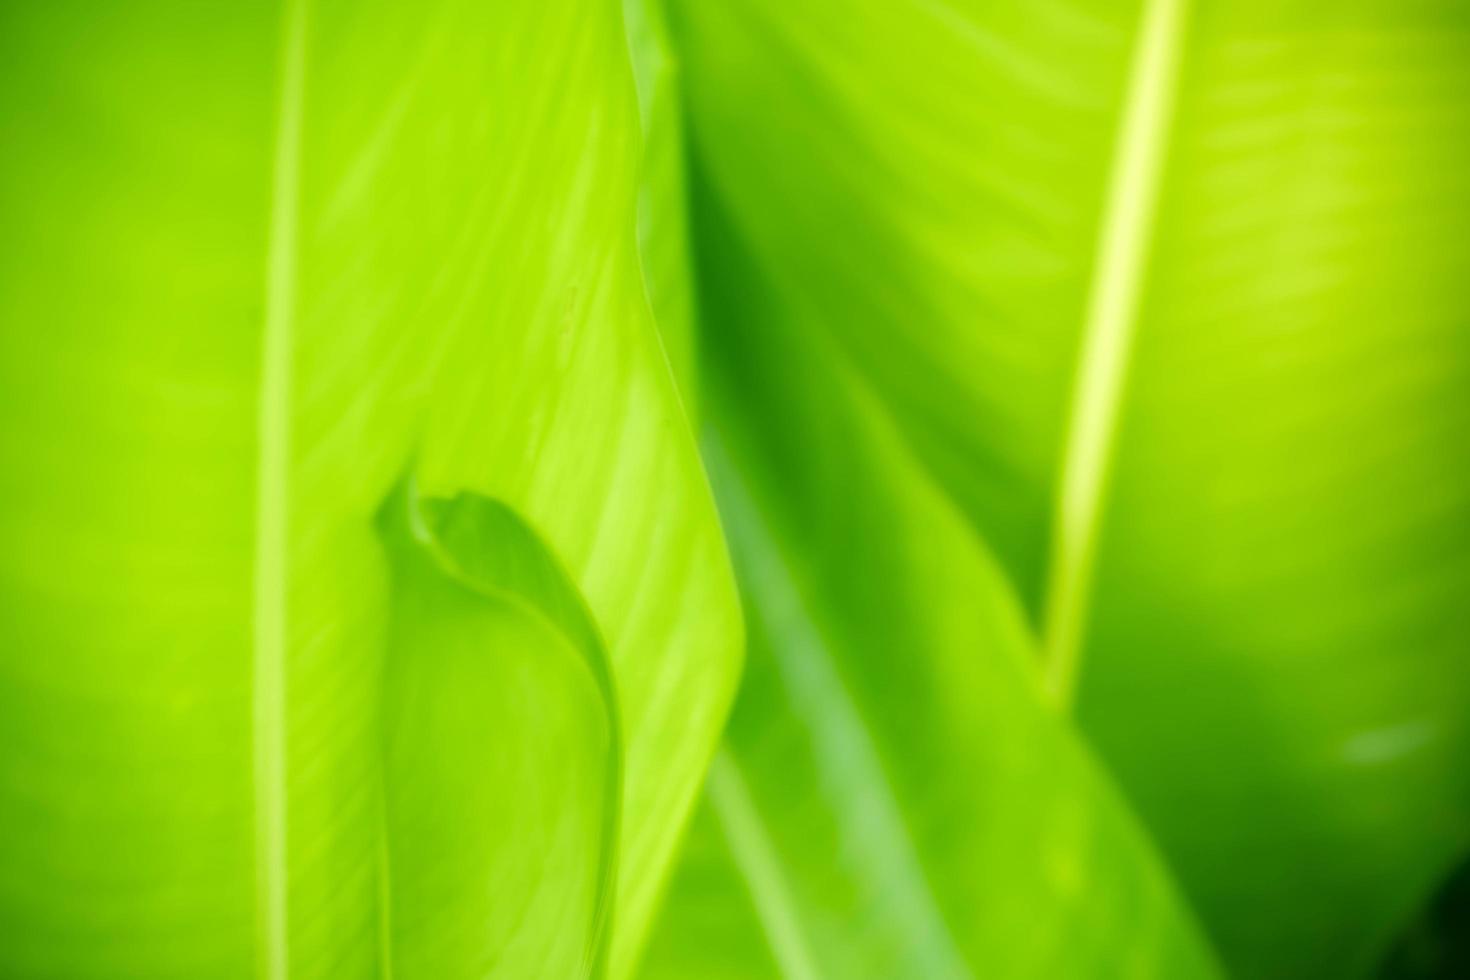 abstrakter Hintergrund Natur des grünen Blattes auf unscharfem grünem Hintergrund im Garten. natürliche grüne Blätter Pflanzen, die als Deckblatt für den Frühlingshintergrund verwendet werden, Grün, Umwelt, Ökologie, lindgrüne Tapete foto